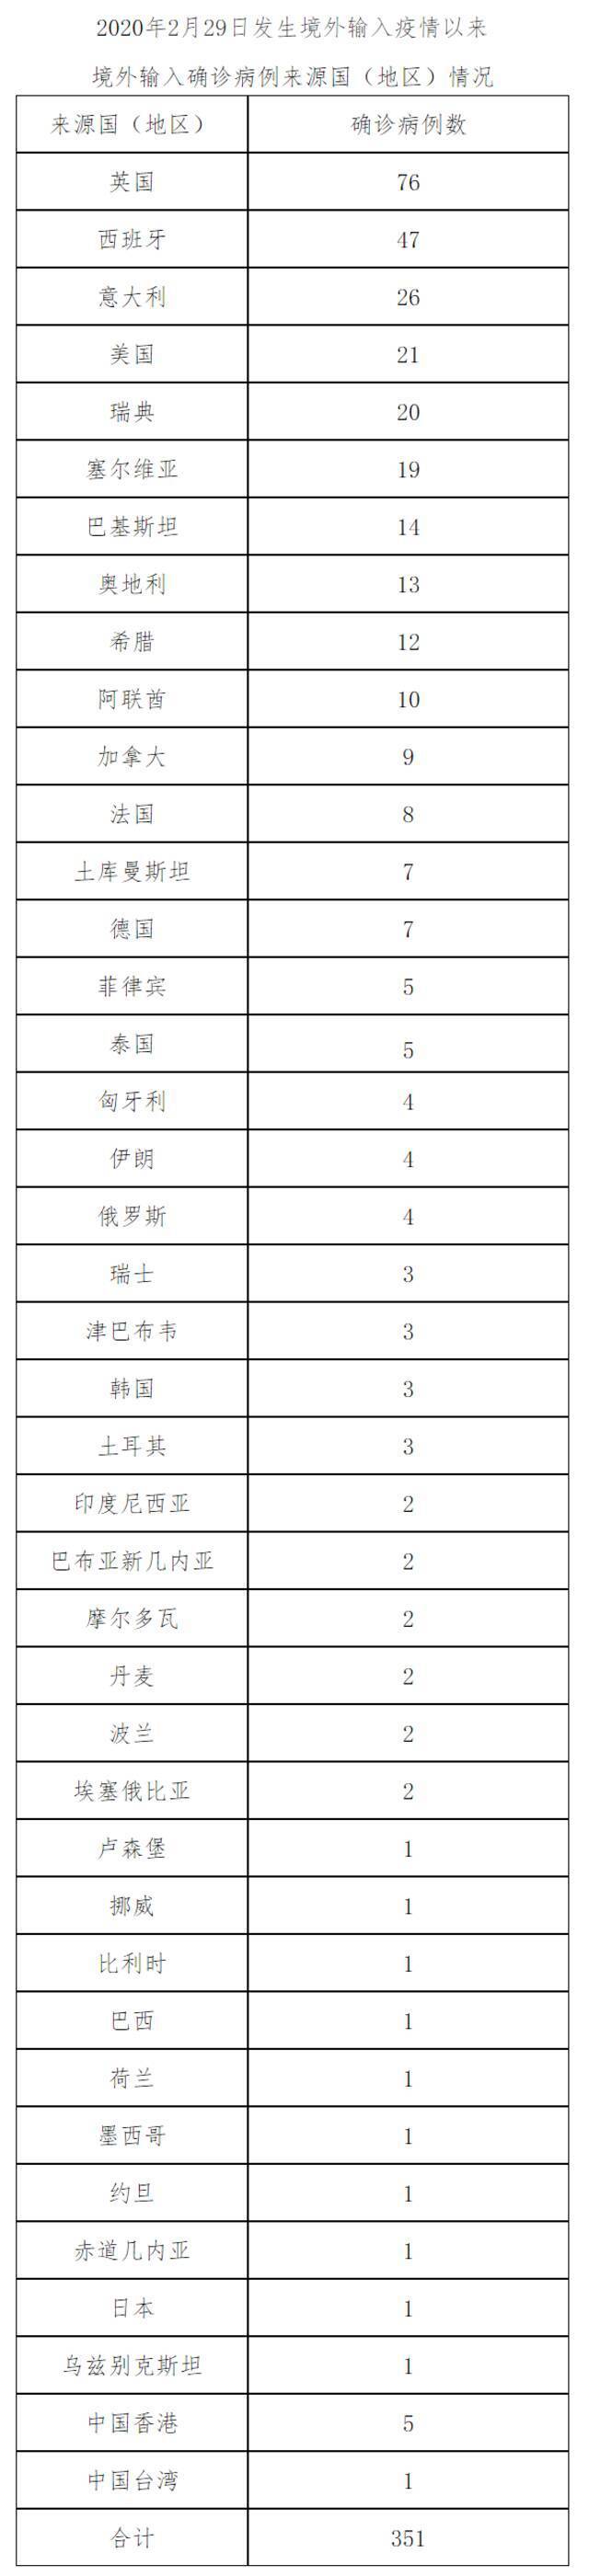 北京1月22日新增9例本土确诊病例、4例本土无症状感染者和5例境外输入无症状感染者 治愈出院2例